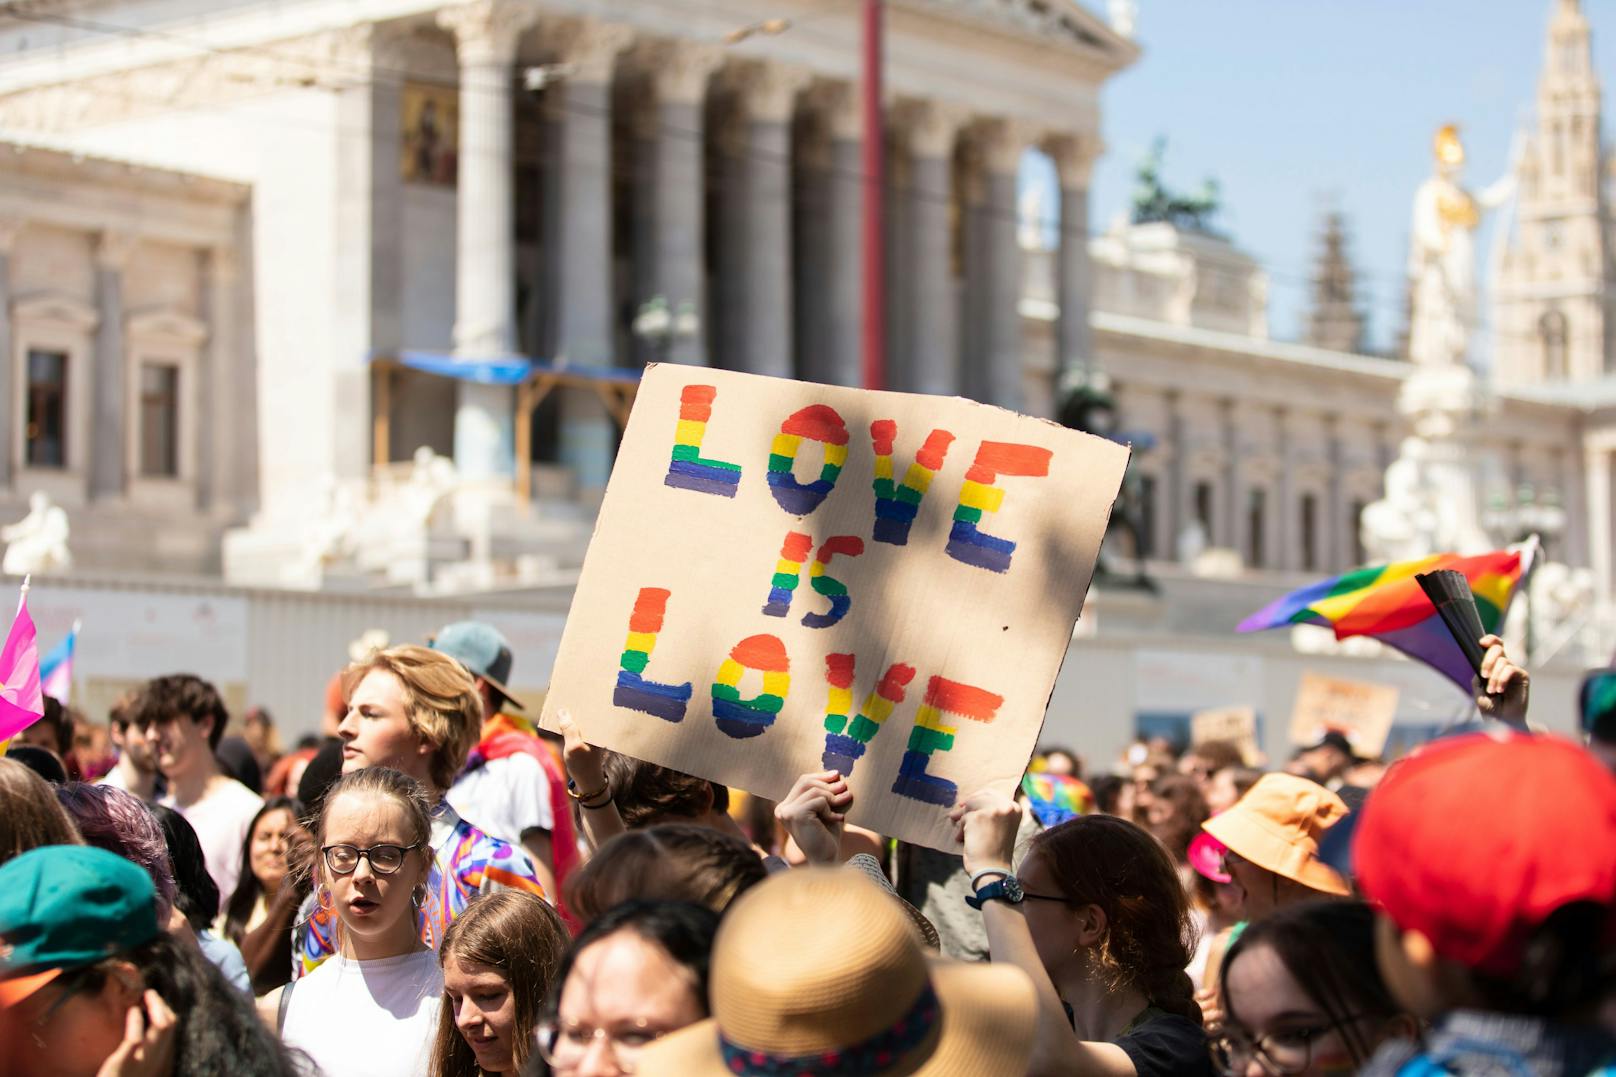 Laut der Landespolizeidirektion Wien standen rund 630 Beamte im Einsatz, um die Vienna Pride abzusichern und zu ermöglichen.